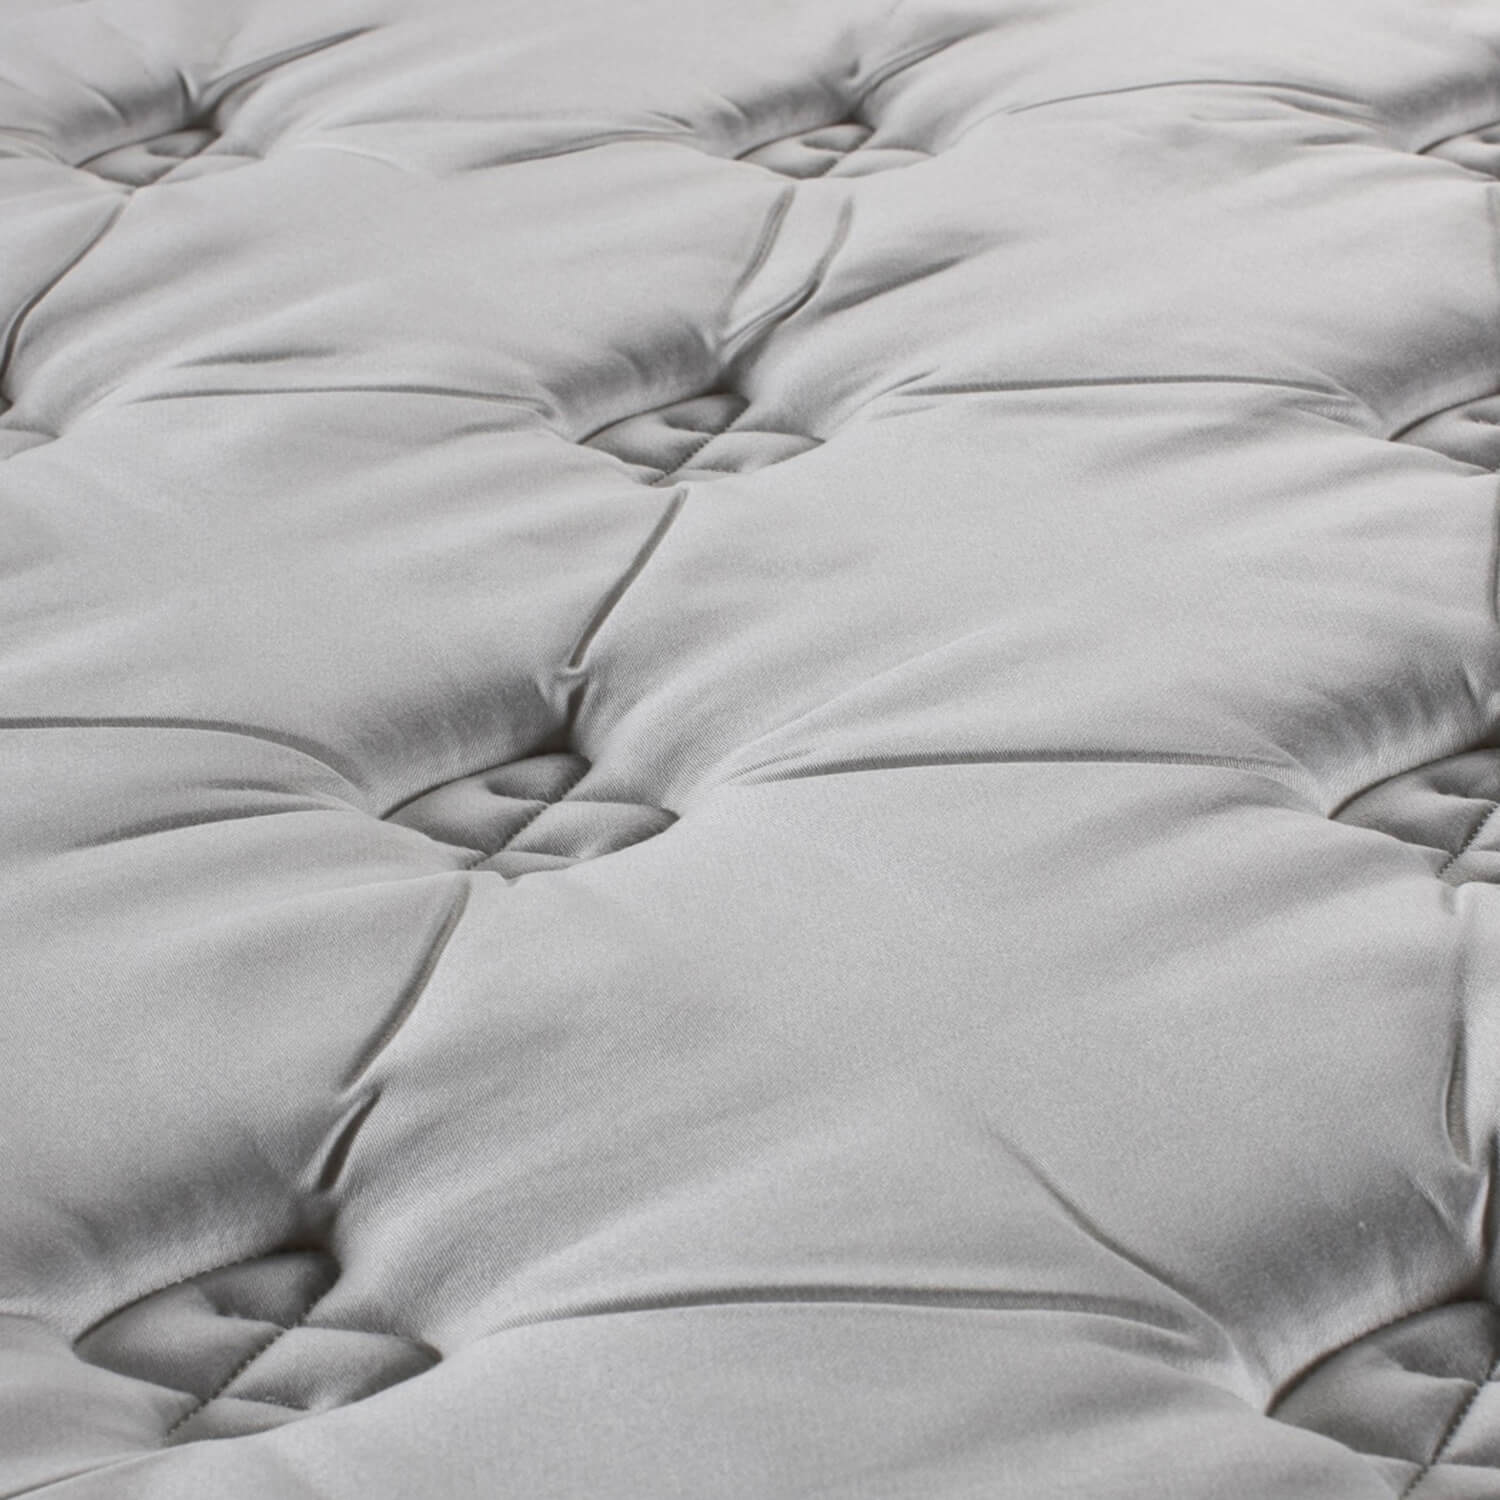 Somersett mattress